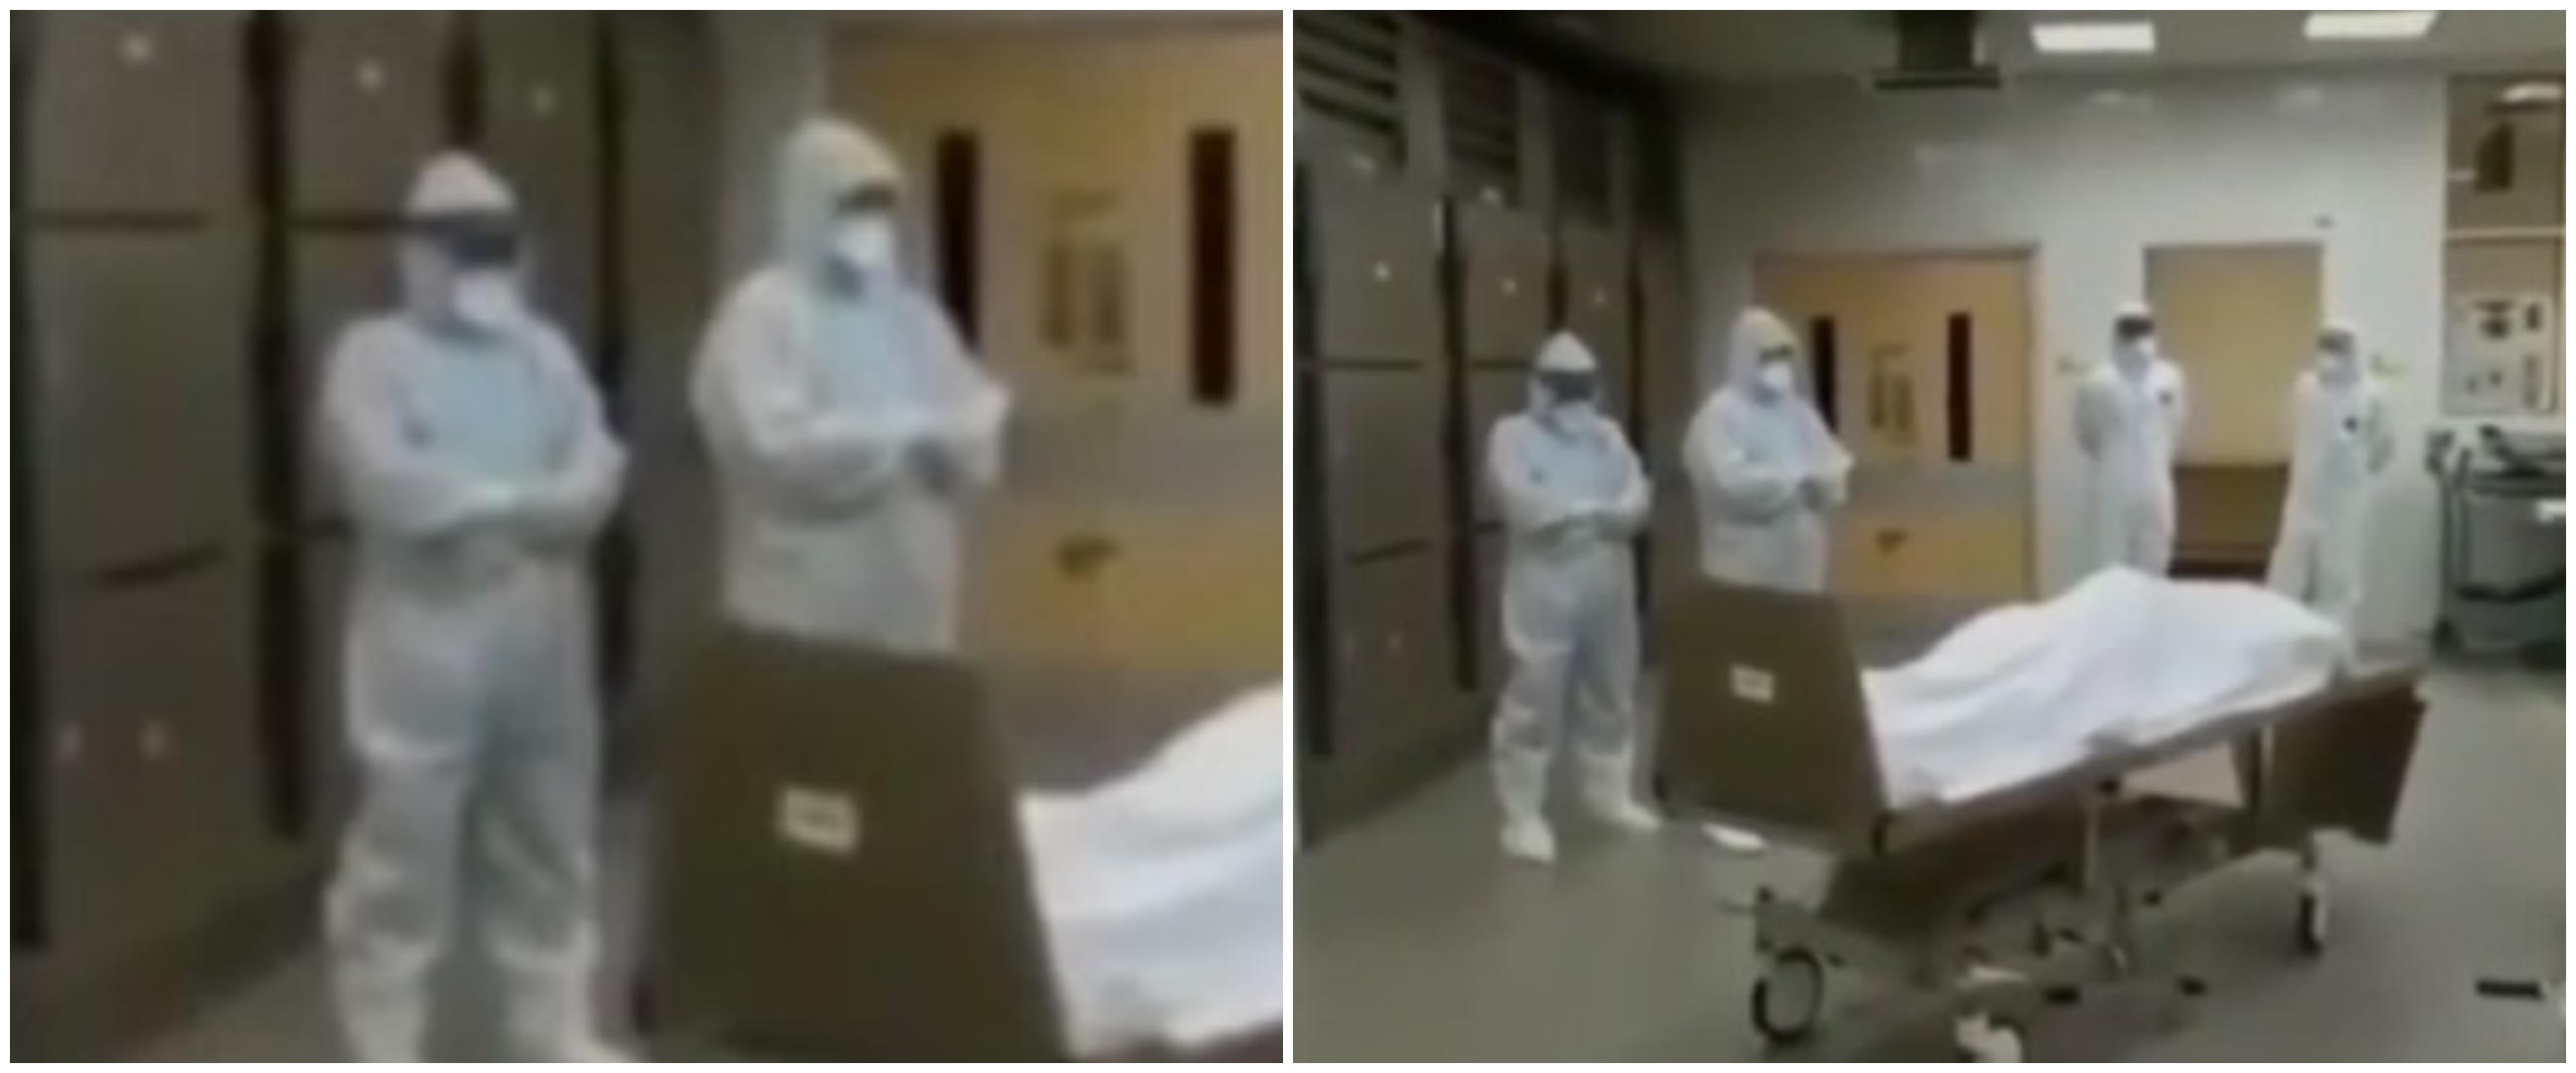 5 Momen petugas medis salatkan jenazah corona tanpa keluarga